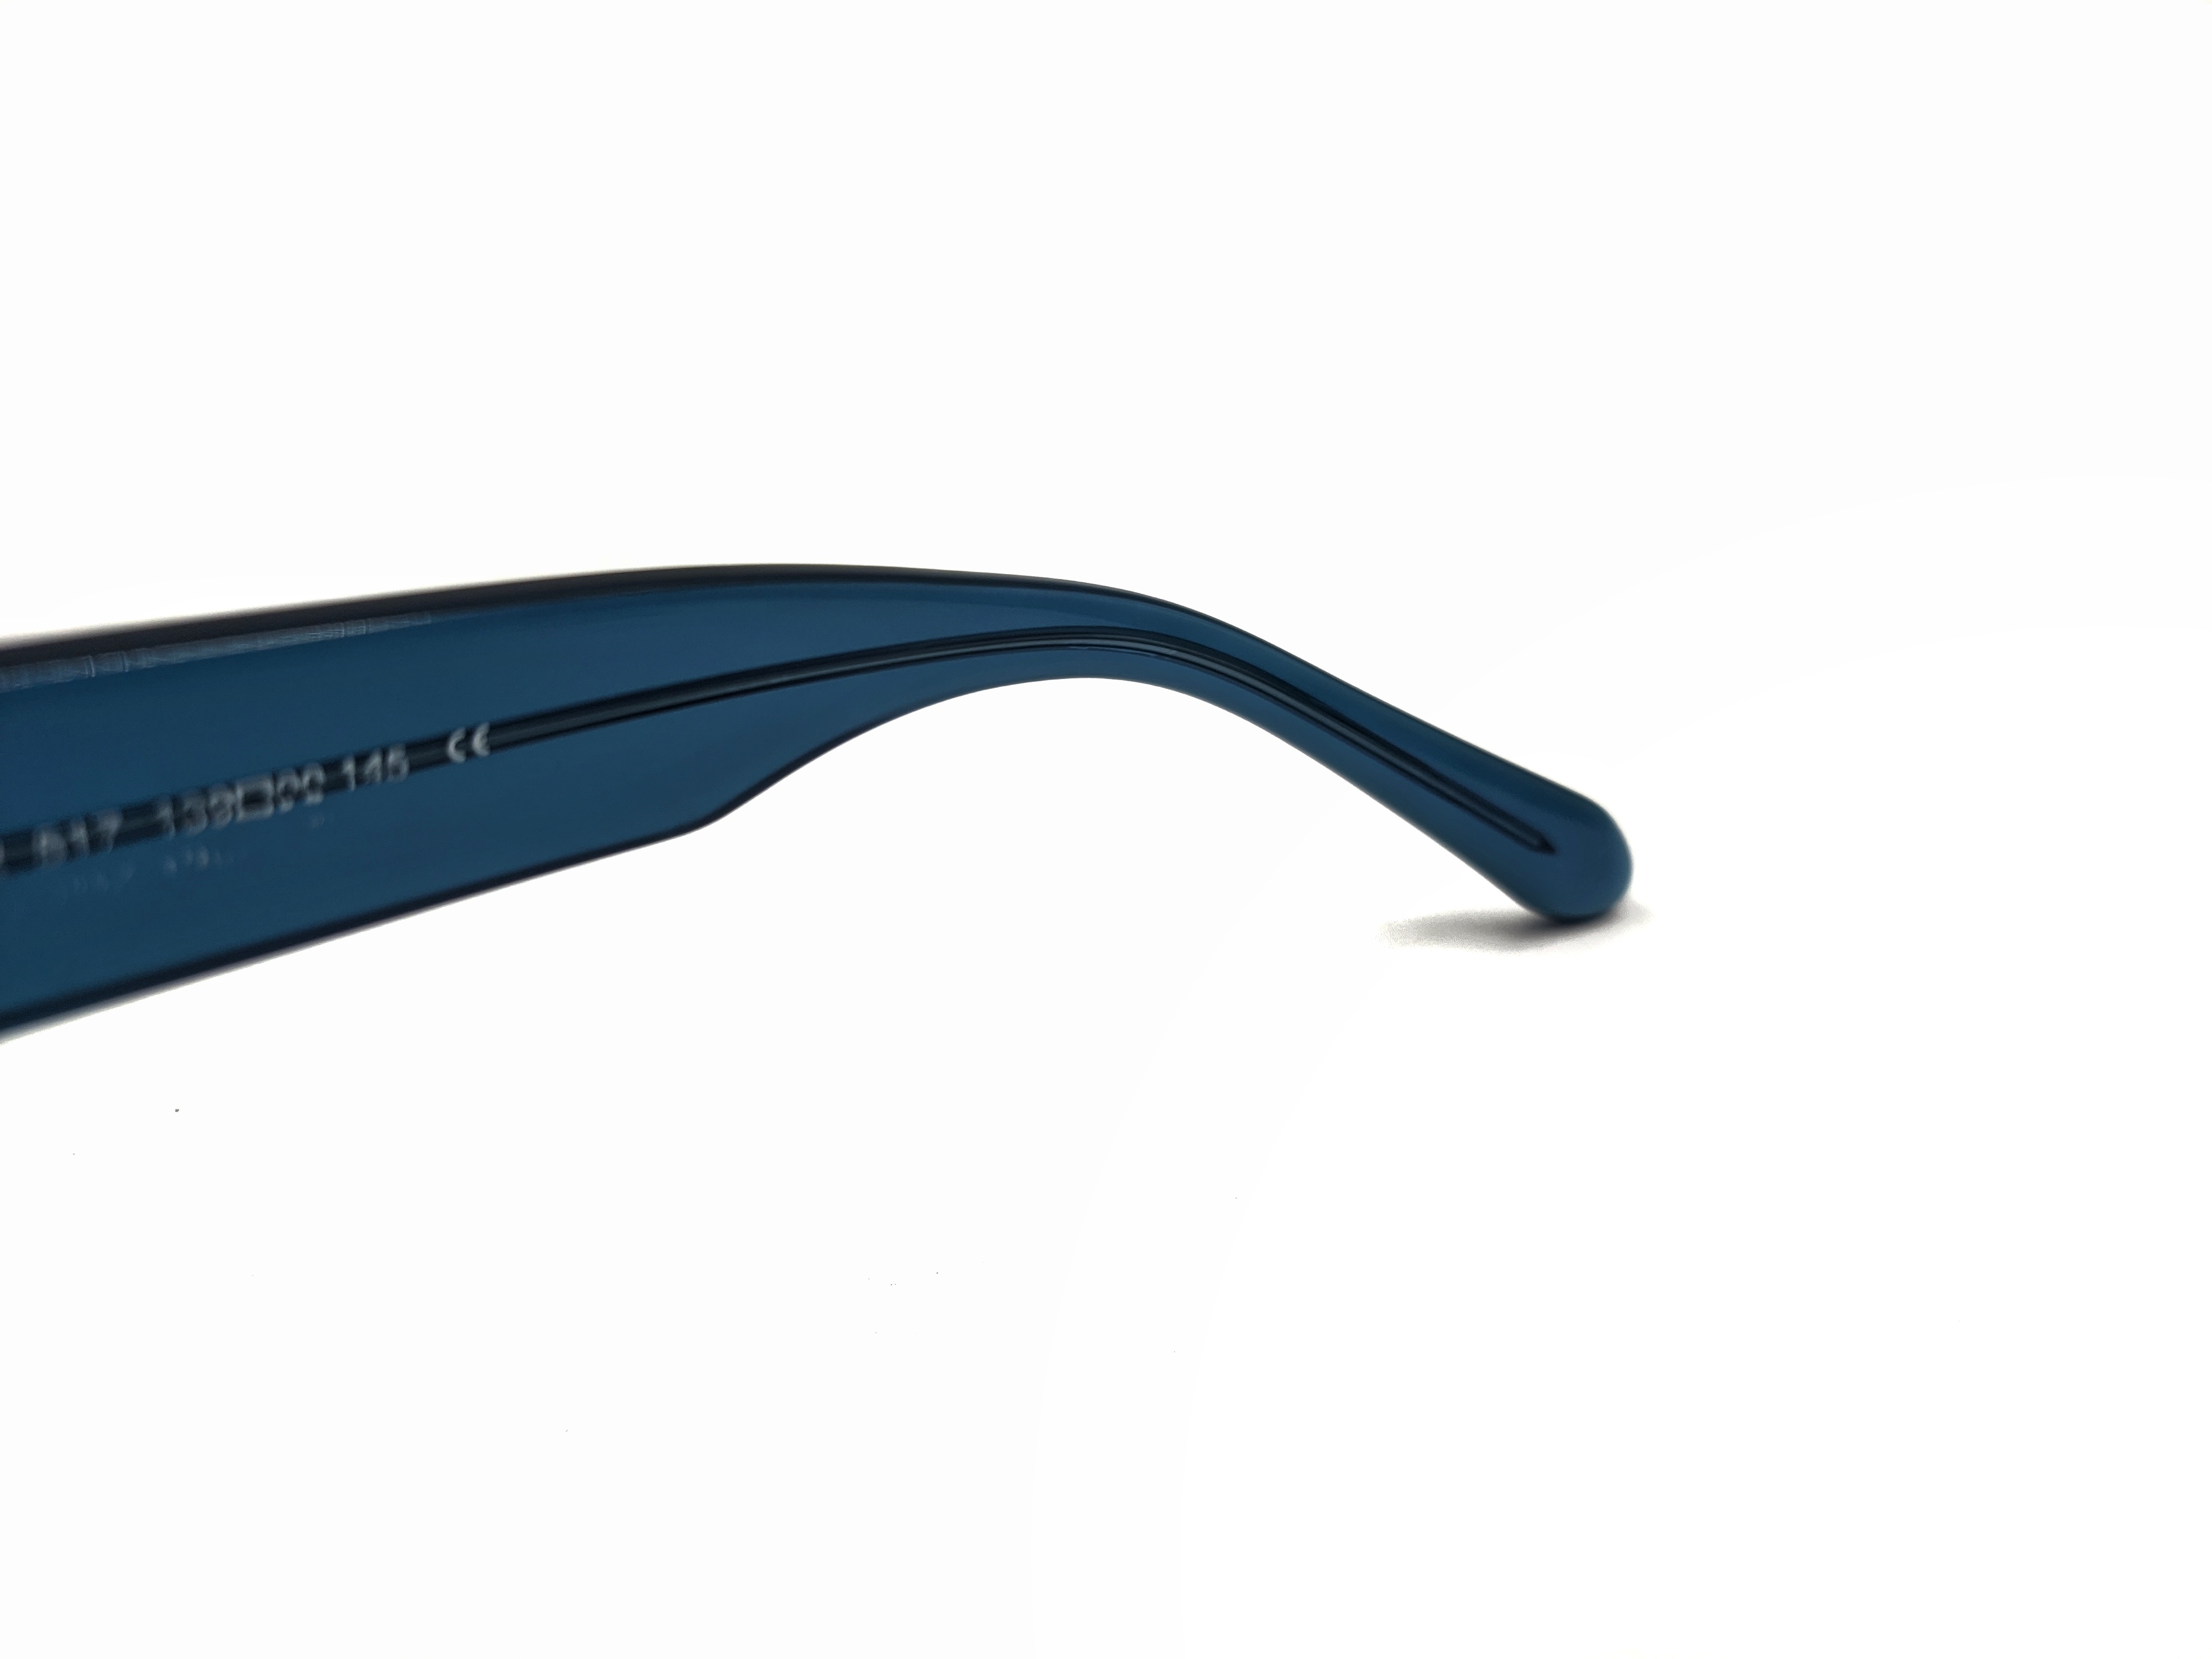 Gafas de sol polarizadas para mujer con marco cuadrado de protección UV personalizadas de acetato azul 2022 tonos de gran tamaño para hombres UV400 moda clásica de lujo